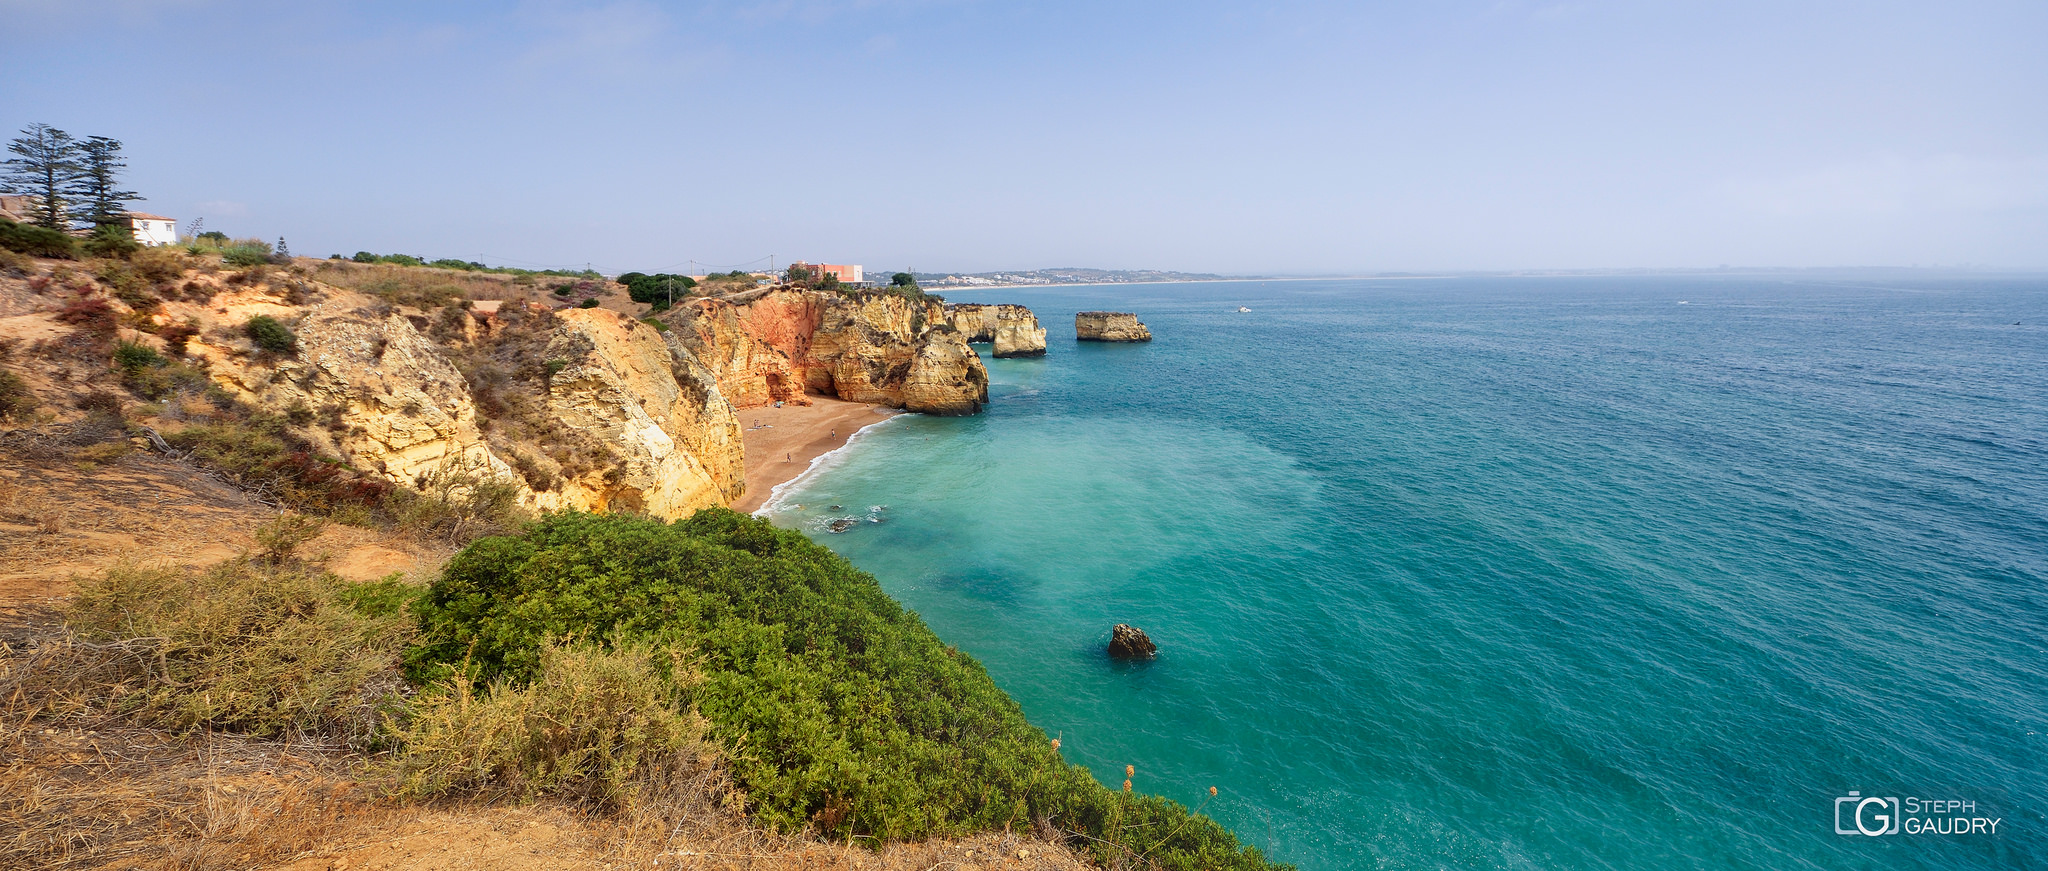 Algarve / Les falaises d'Algarve